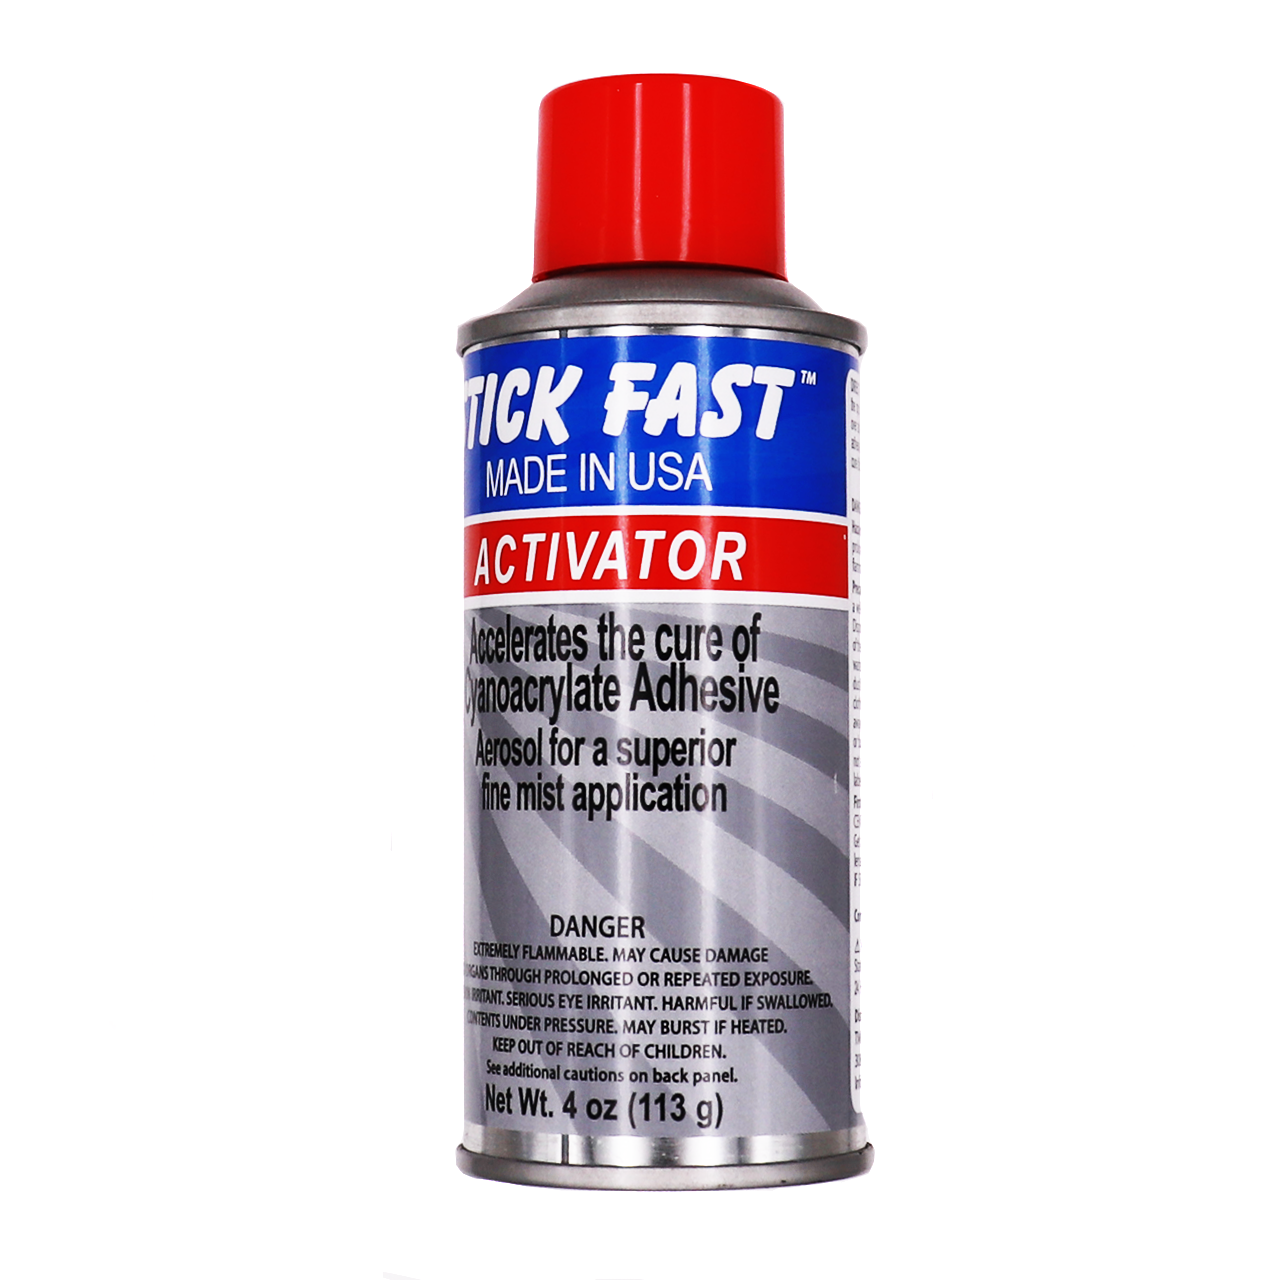 Stick Fast CA Glue Activator, Aerosol (4 oz)